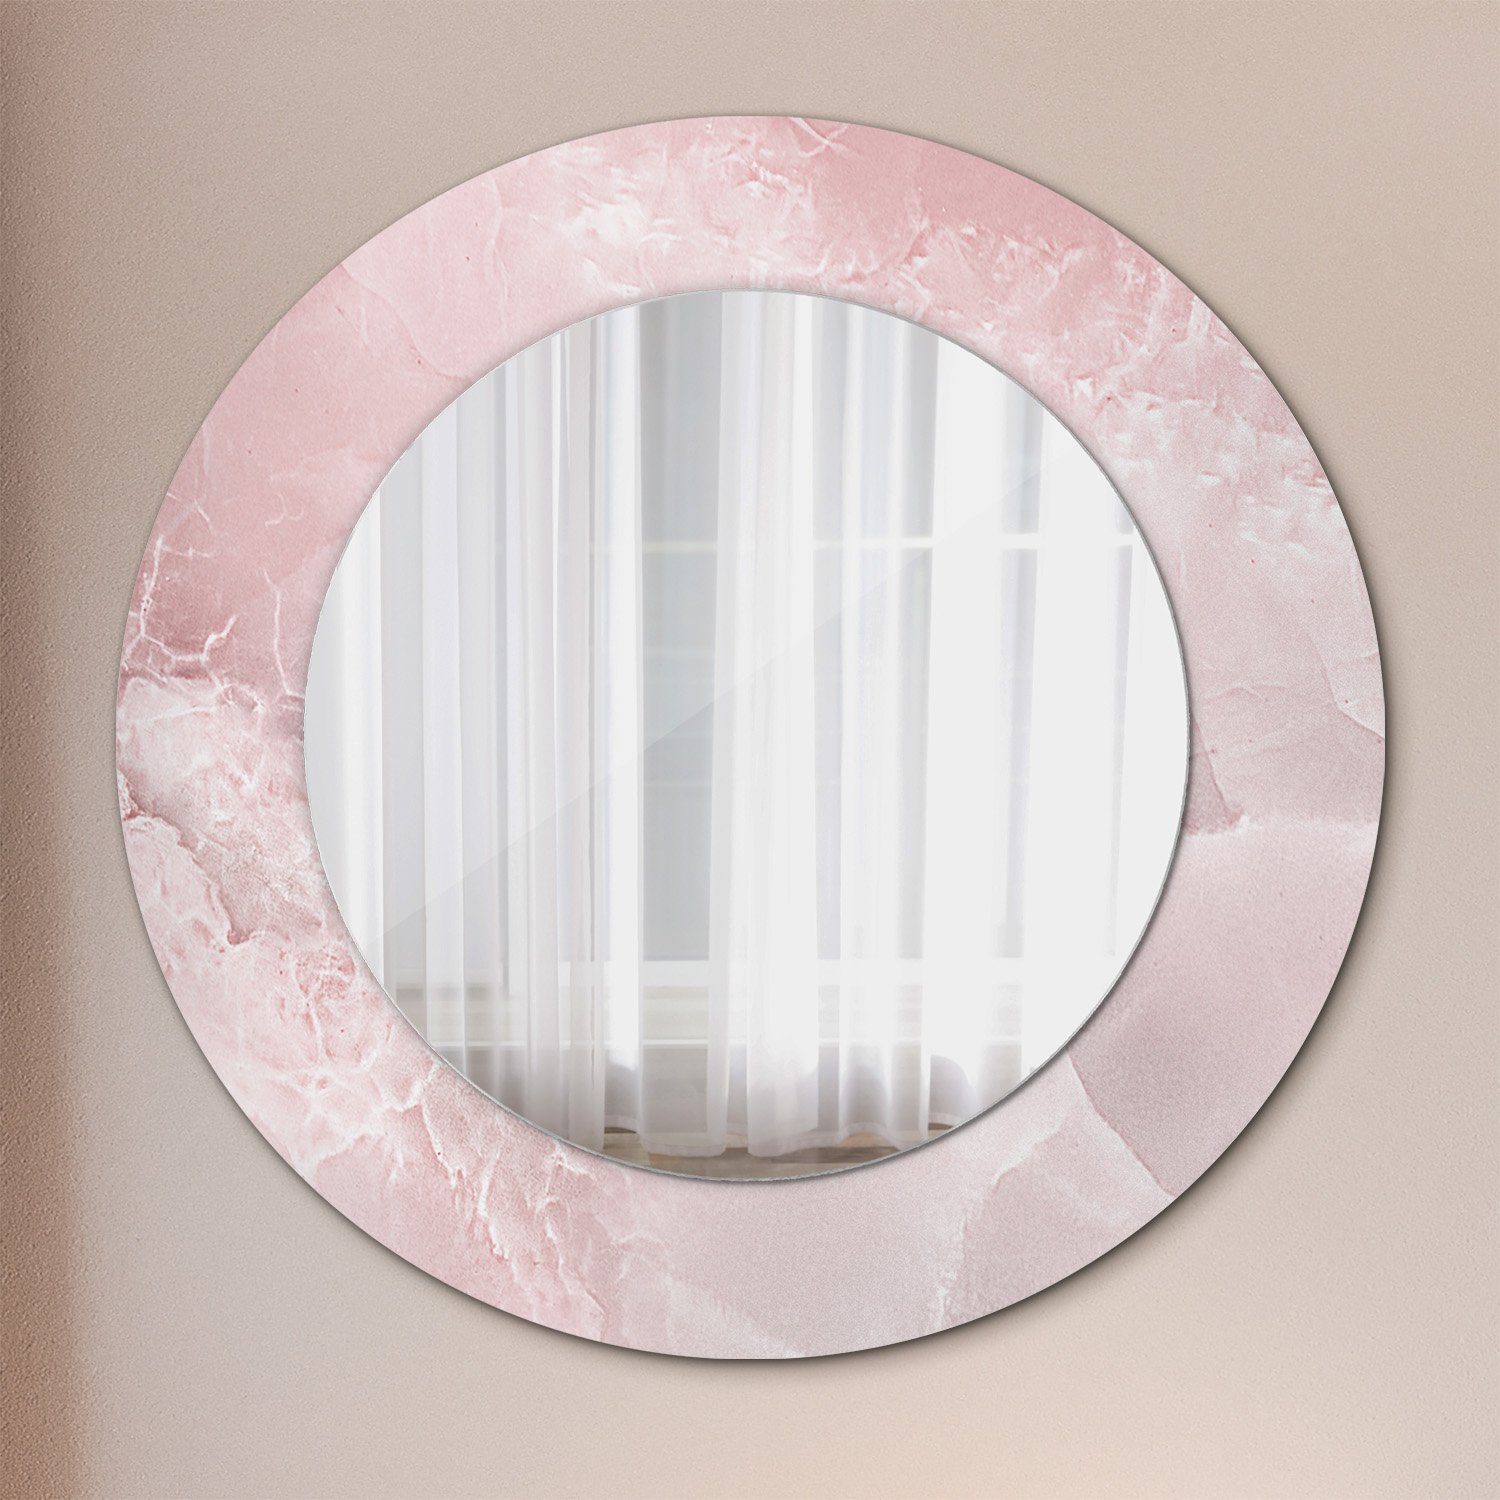 Tulup Spiegel Modern Wandmontage Wandspiegel Spiegel mit Aufdruck Rund: Ø50cm Rosa Stein